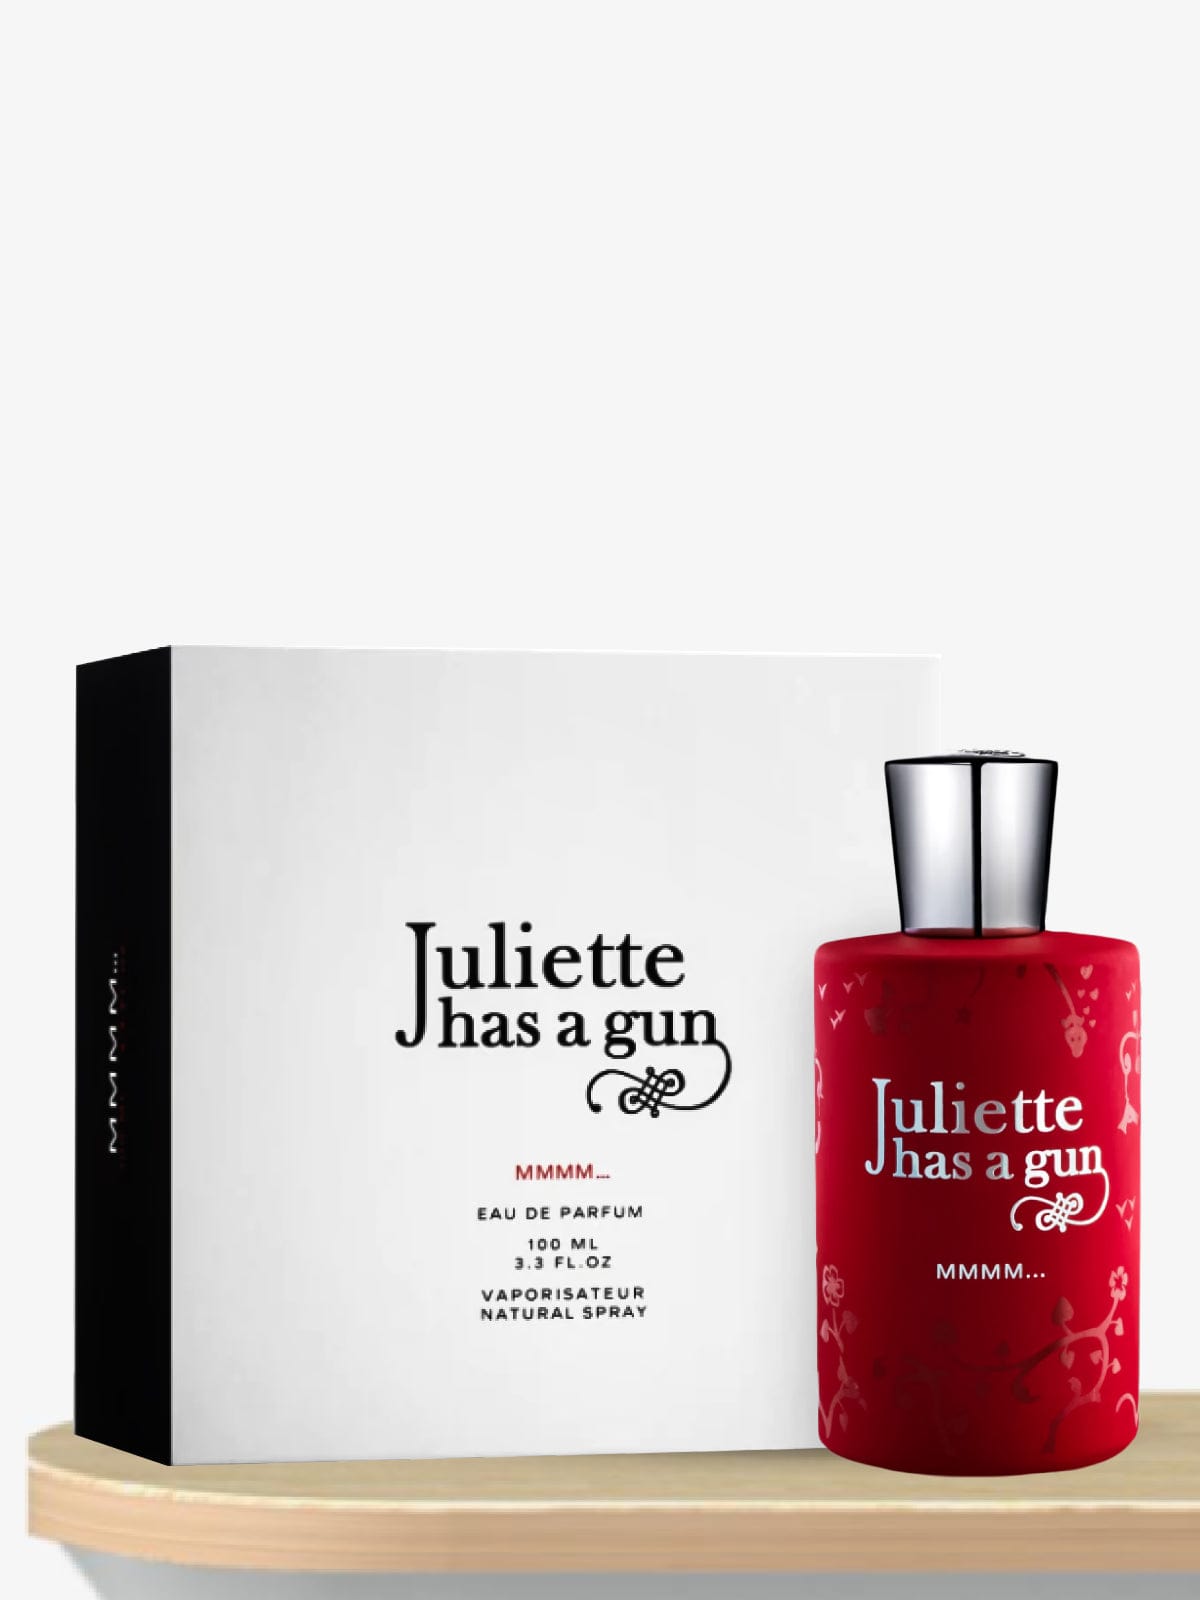 Juliette Has A Gun Mmmm… Eau de Parfum 100 mL / Female